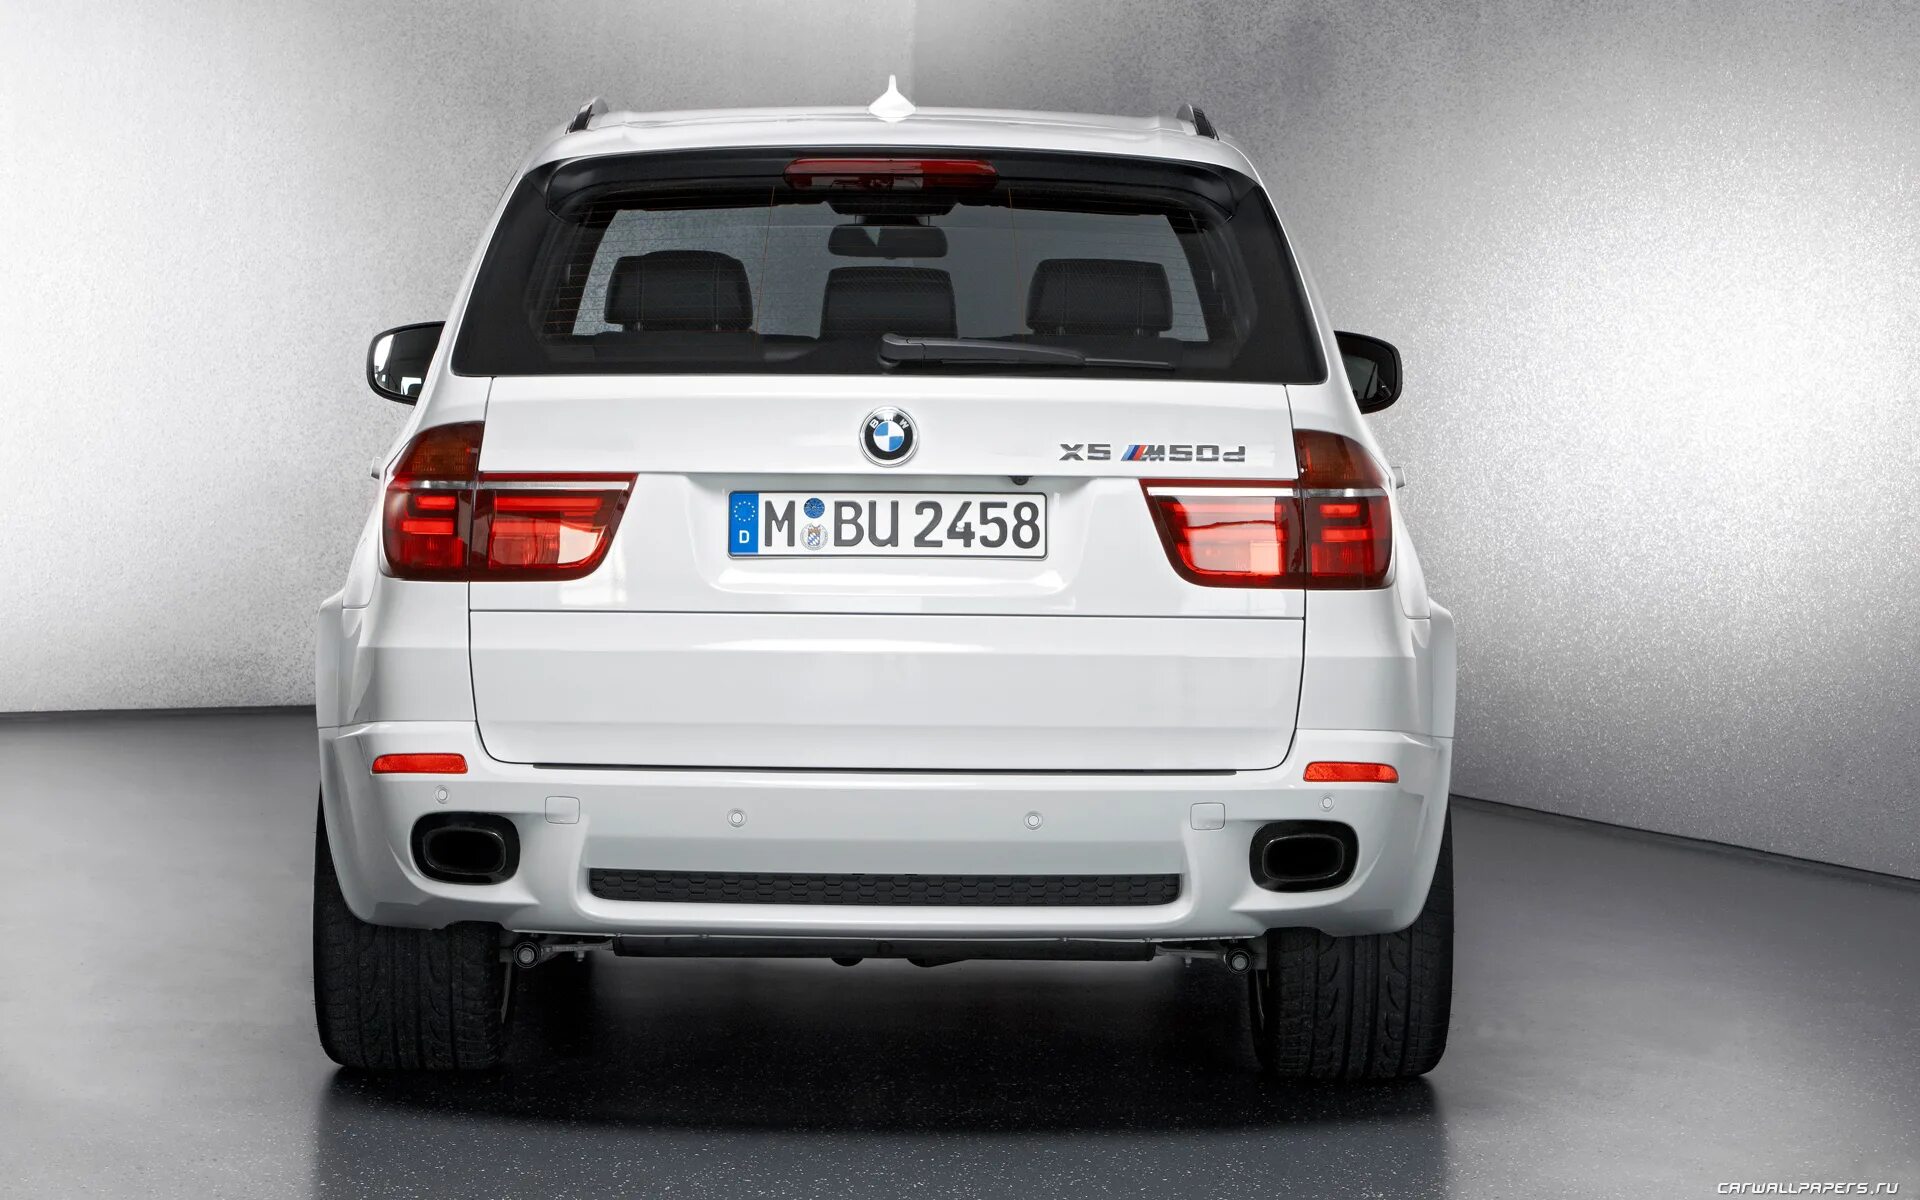 M 5 50. BMW x5 m50d. BMW x5 m Diesel. BMW x5 m5 2012. BMW x5 e70 2012.